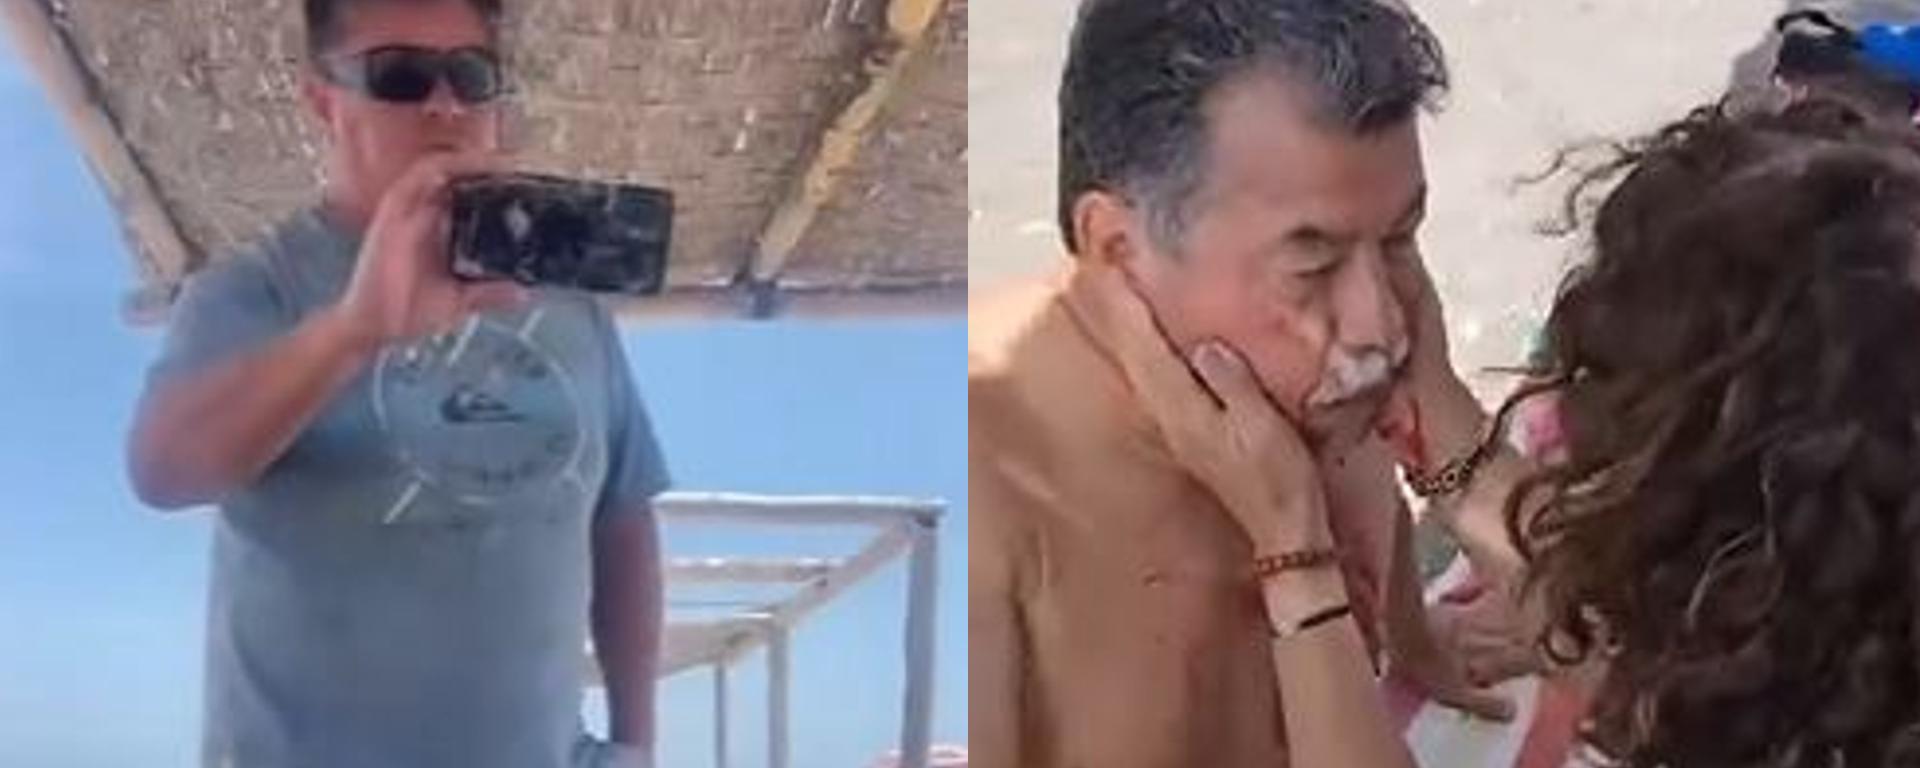 Discriminación y agresión en playa de Tacna: Fiscalía inició investigación contra sujeto que intentó expulsar a veraneantes en “El Planchón”